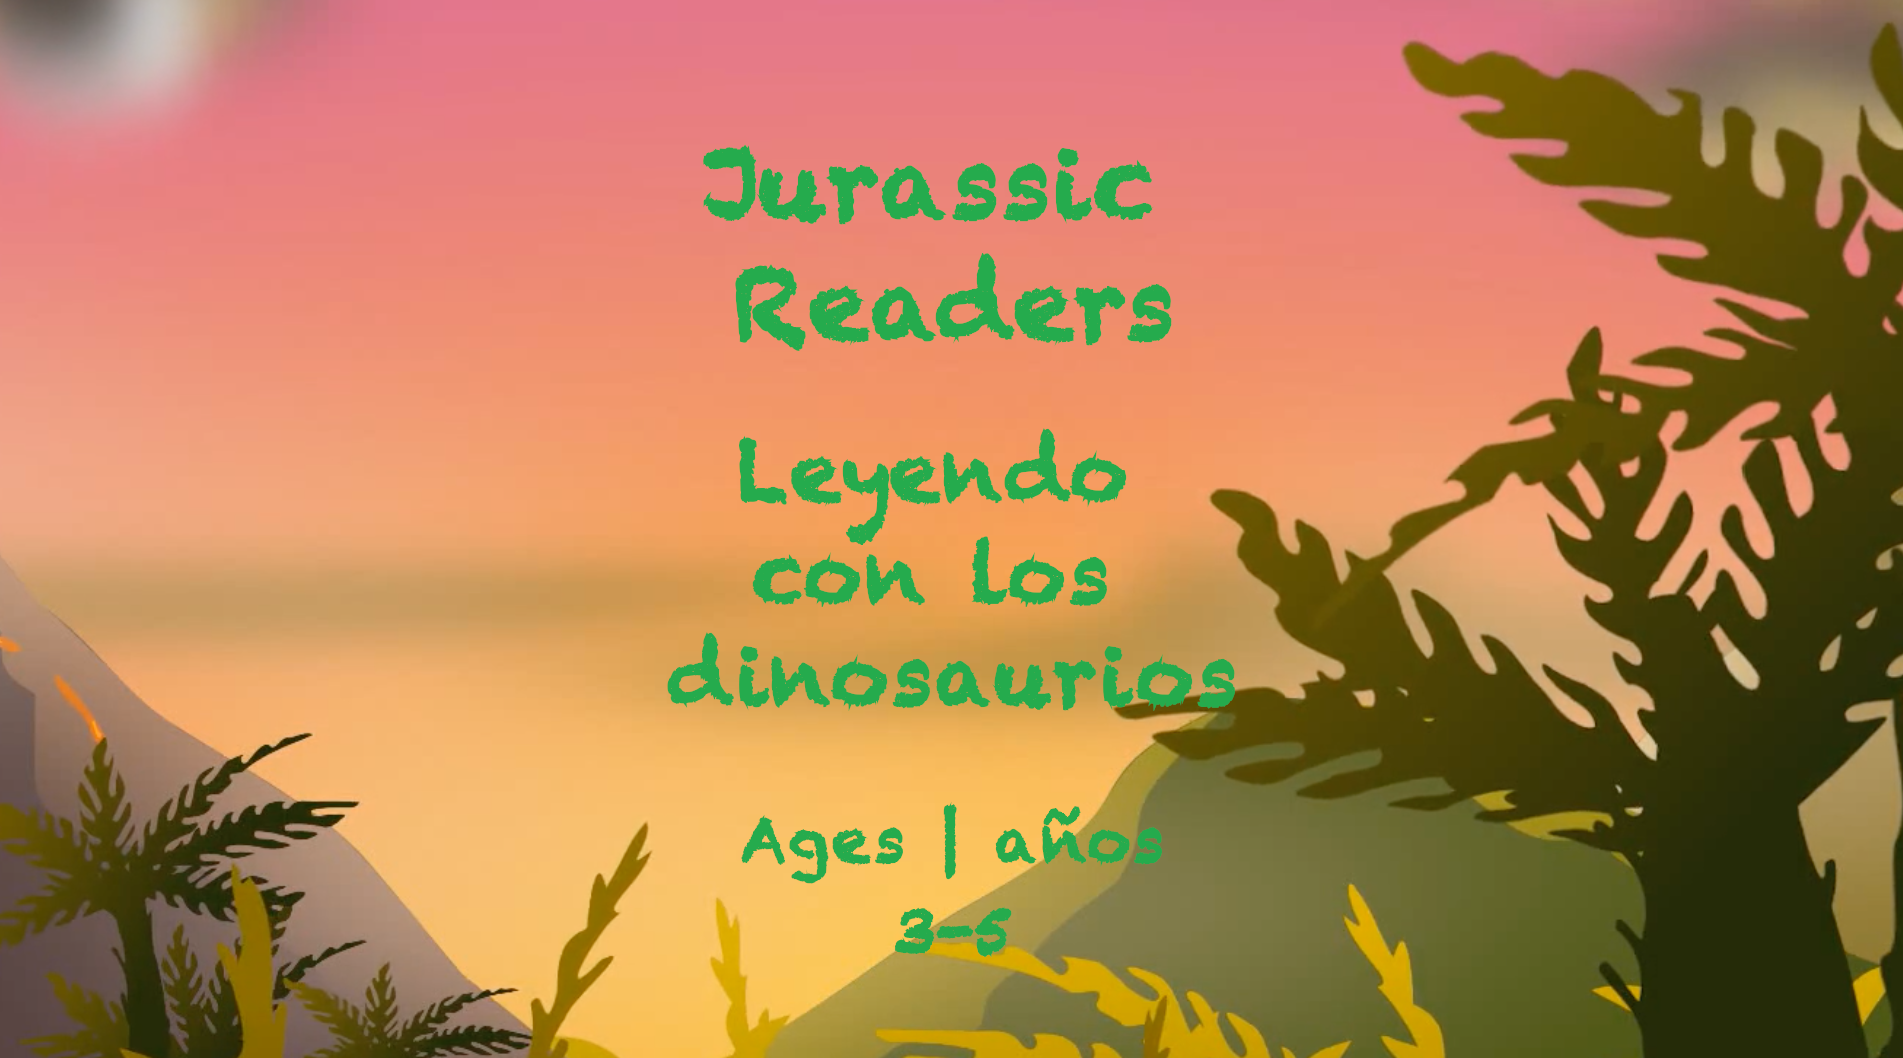 Jurassic Readers para niños de 3 a 5 años